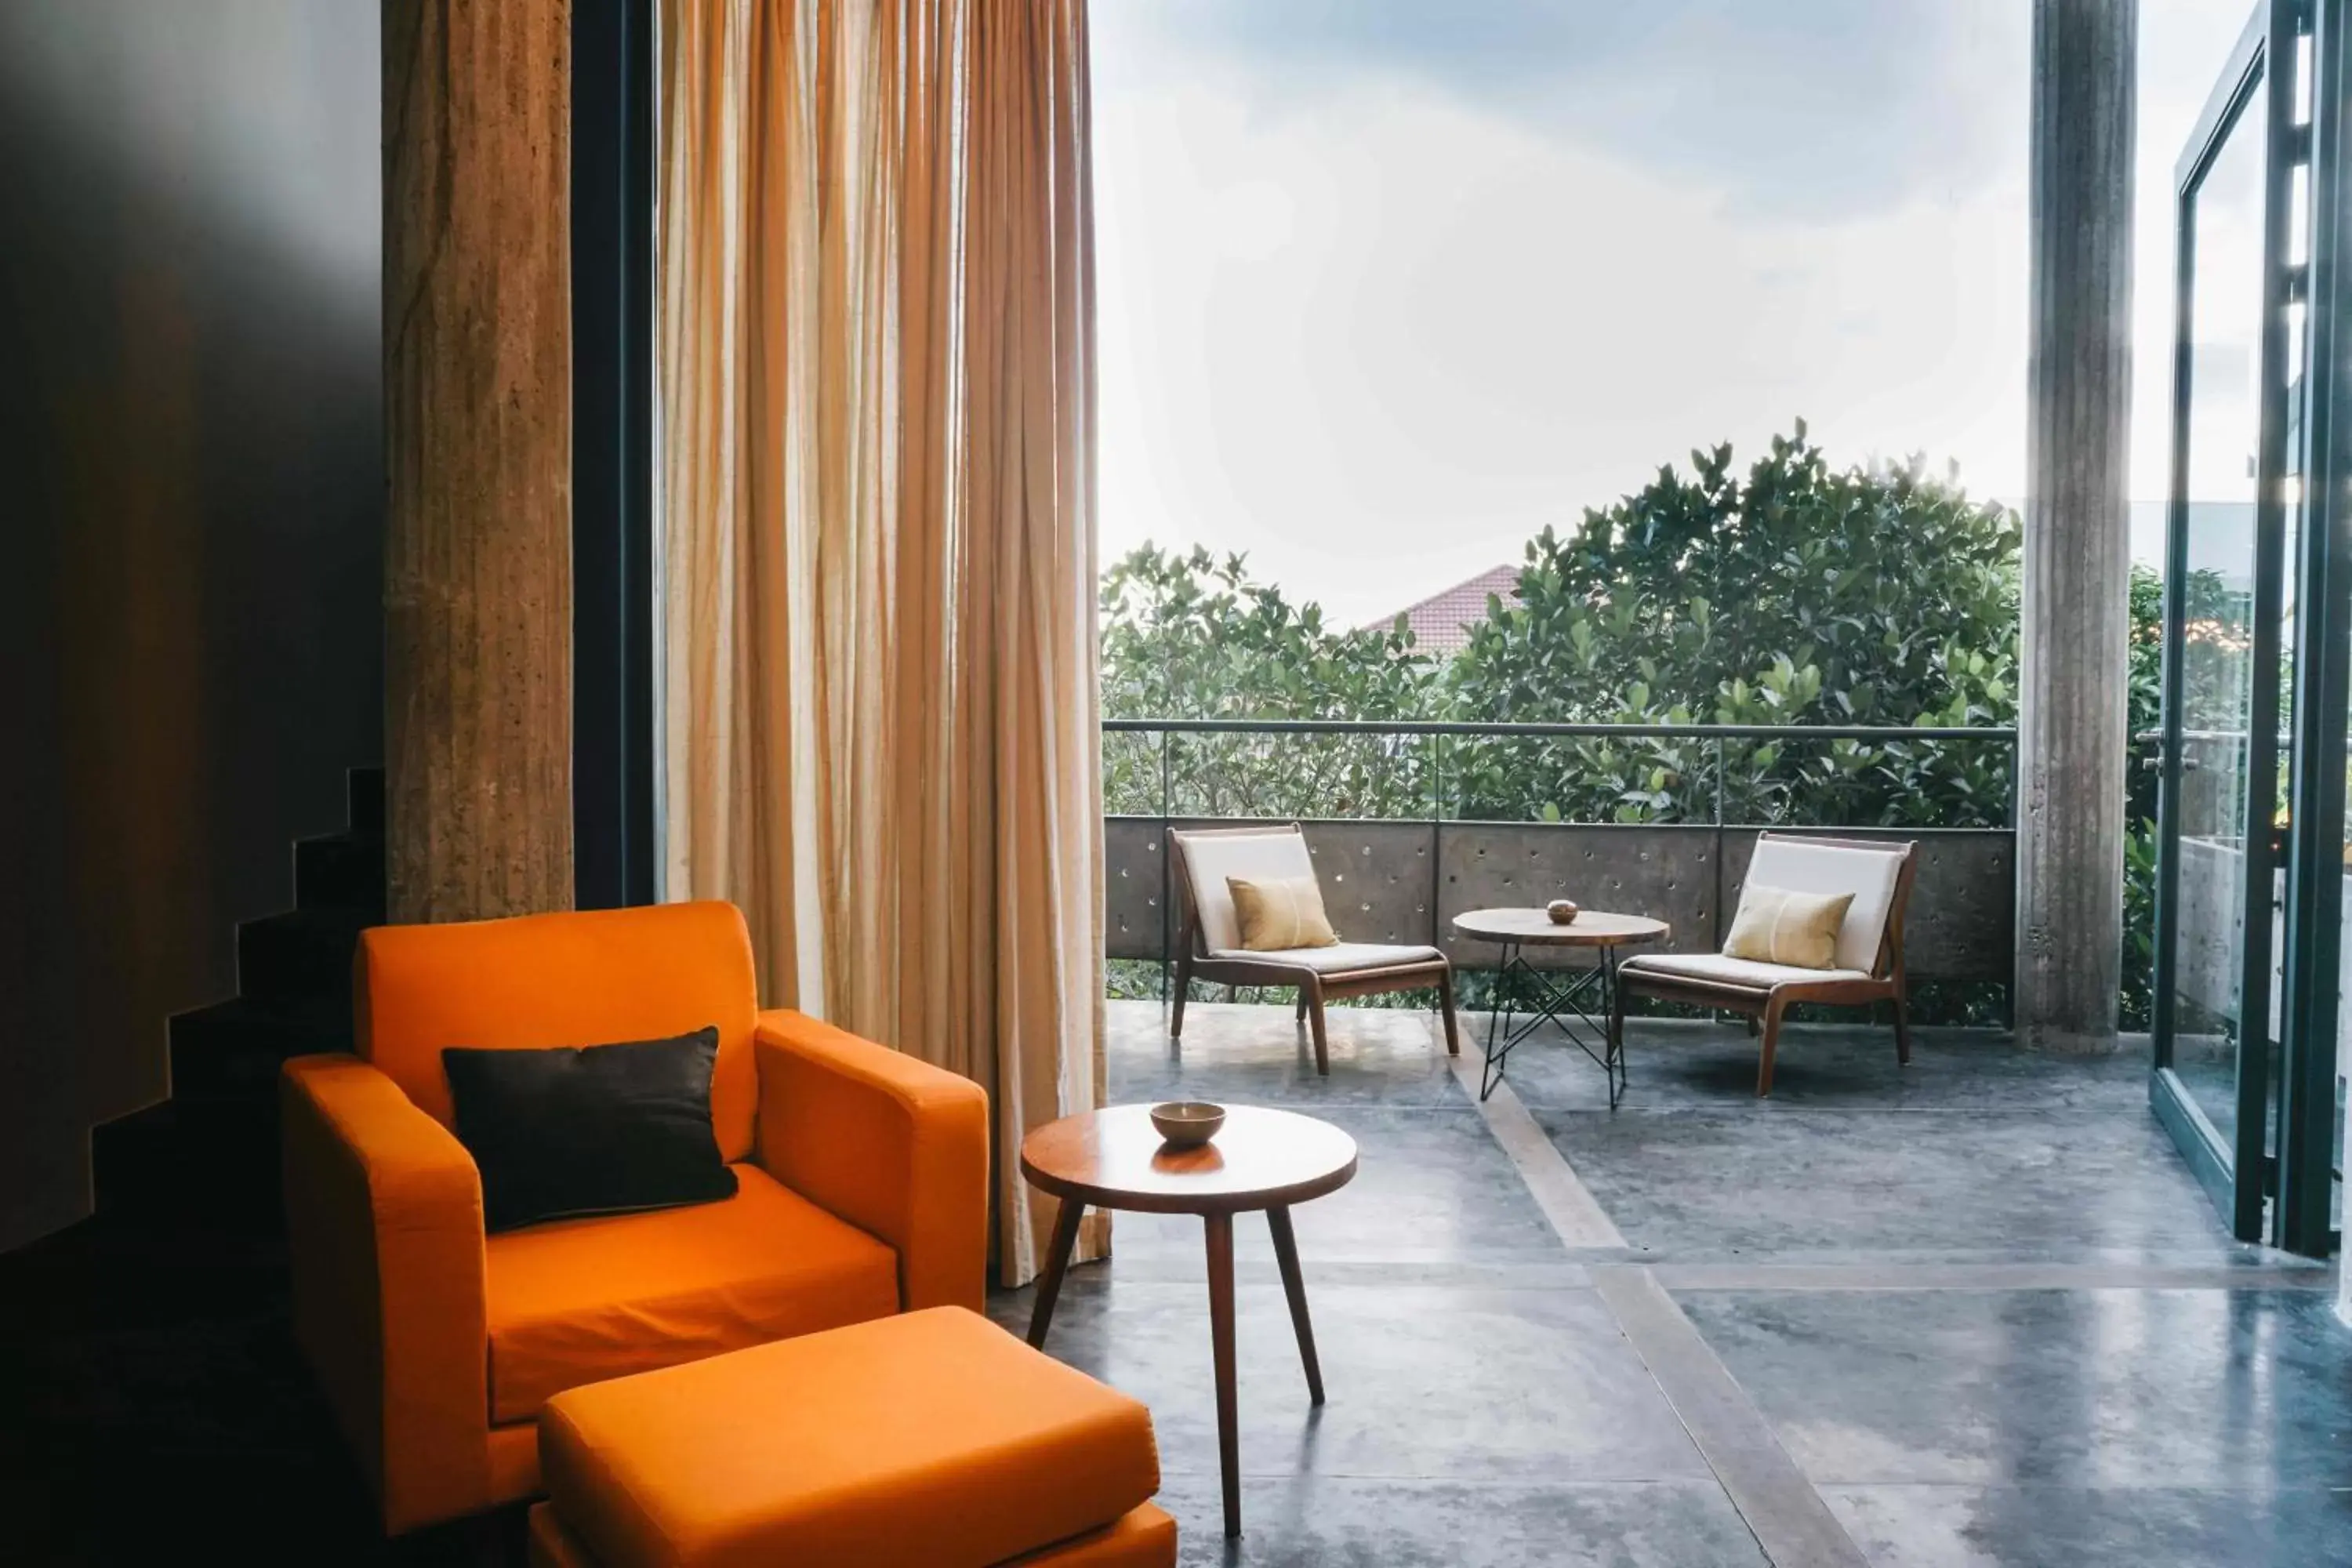 Balcony/Terrace, Seating Area in Rambutan Resort – Siem Reap